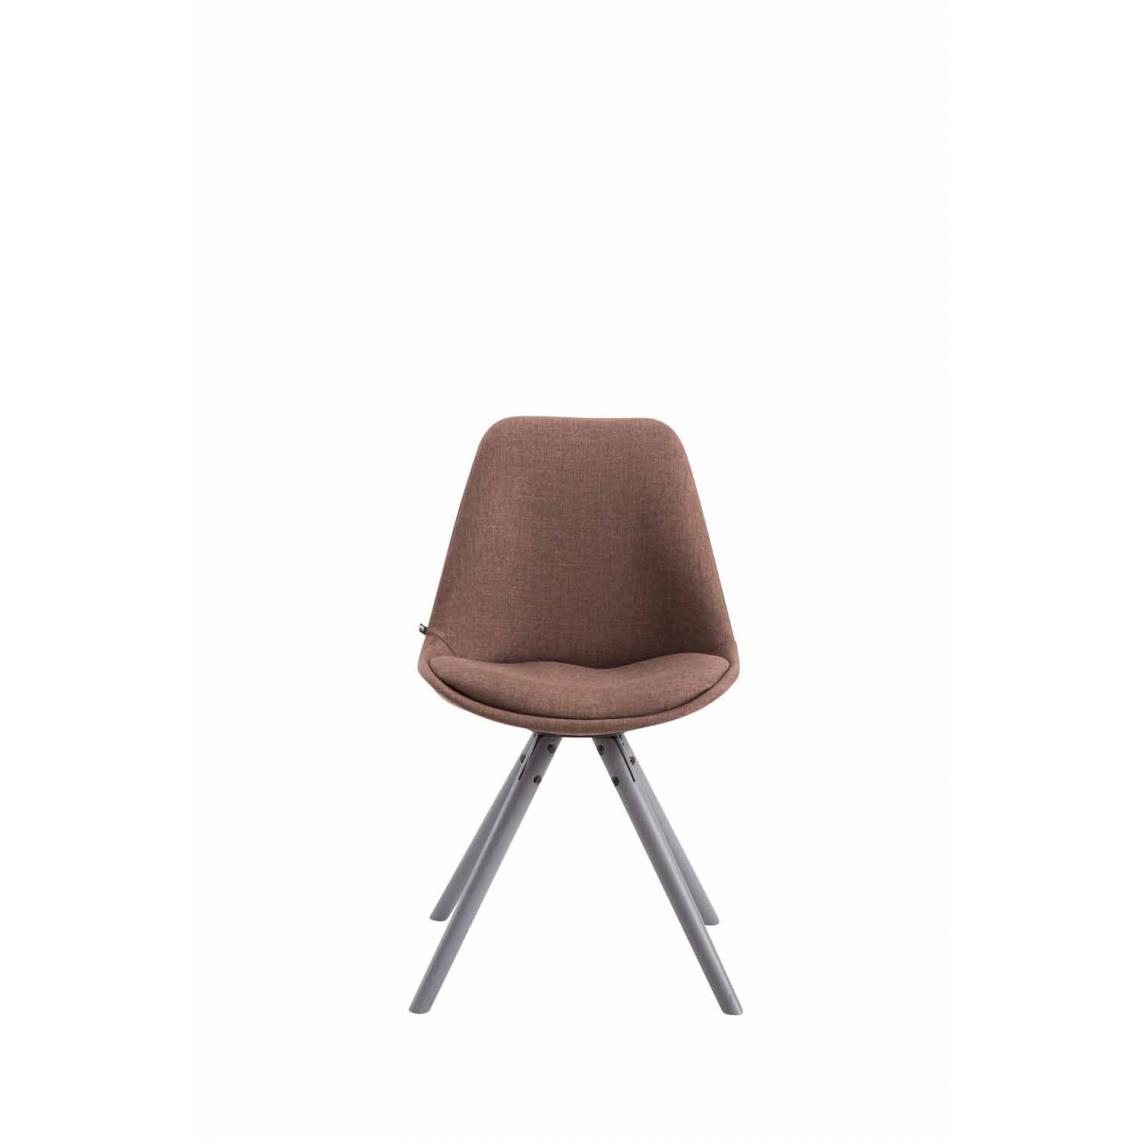 Icaverne - Admirable Chaise visiteur reference Katmandou tissu rond gris couleur marron - Chaises